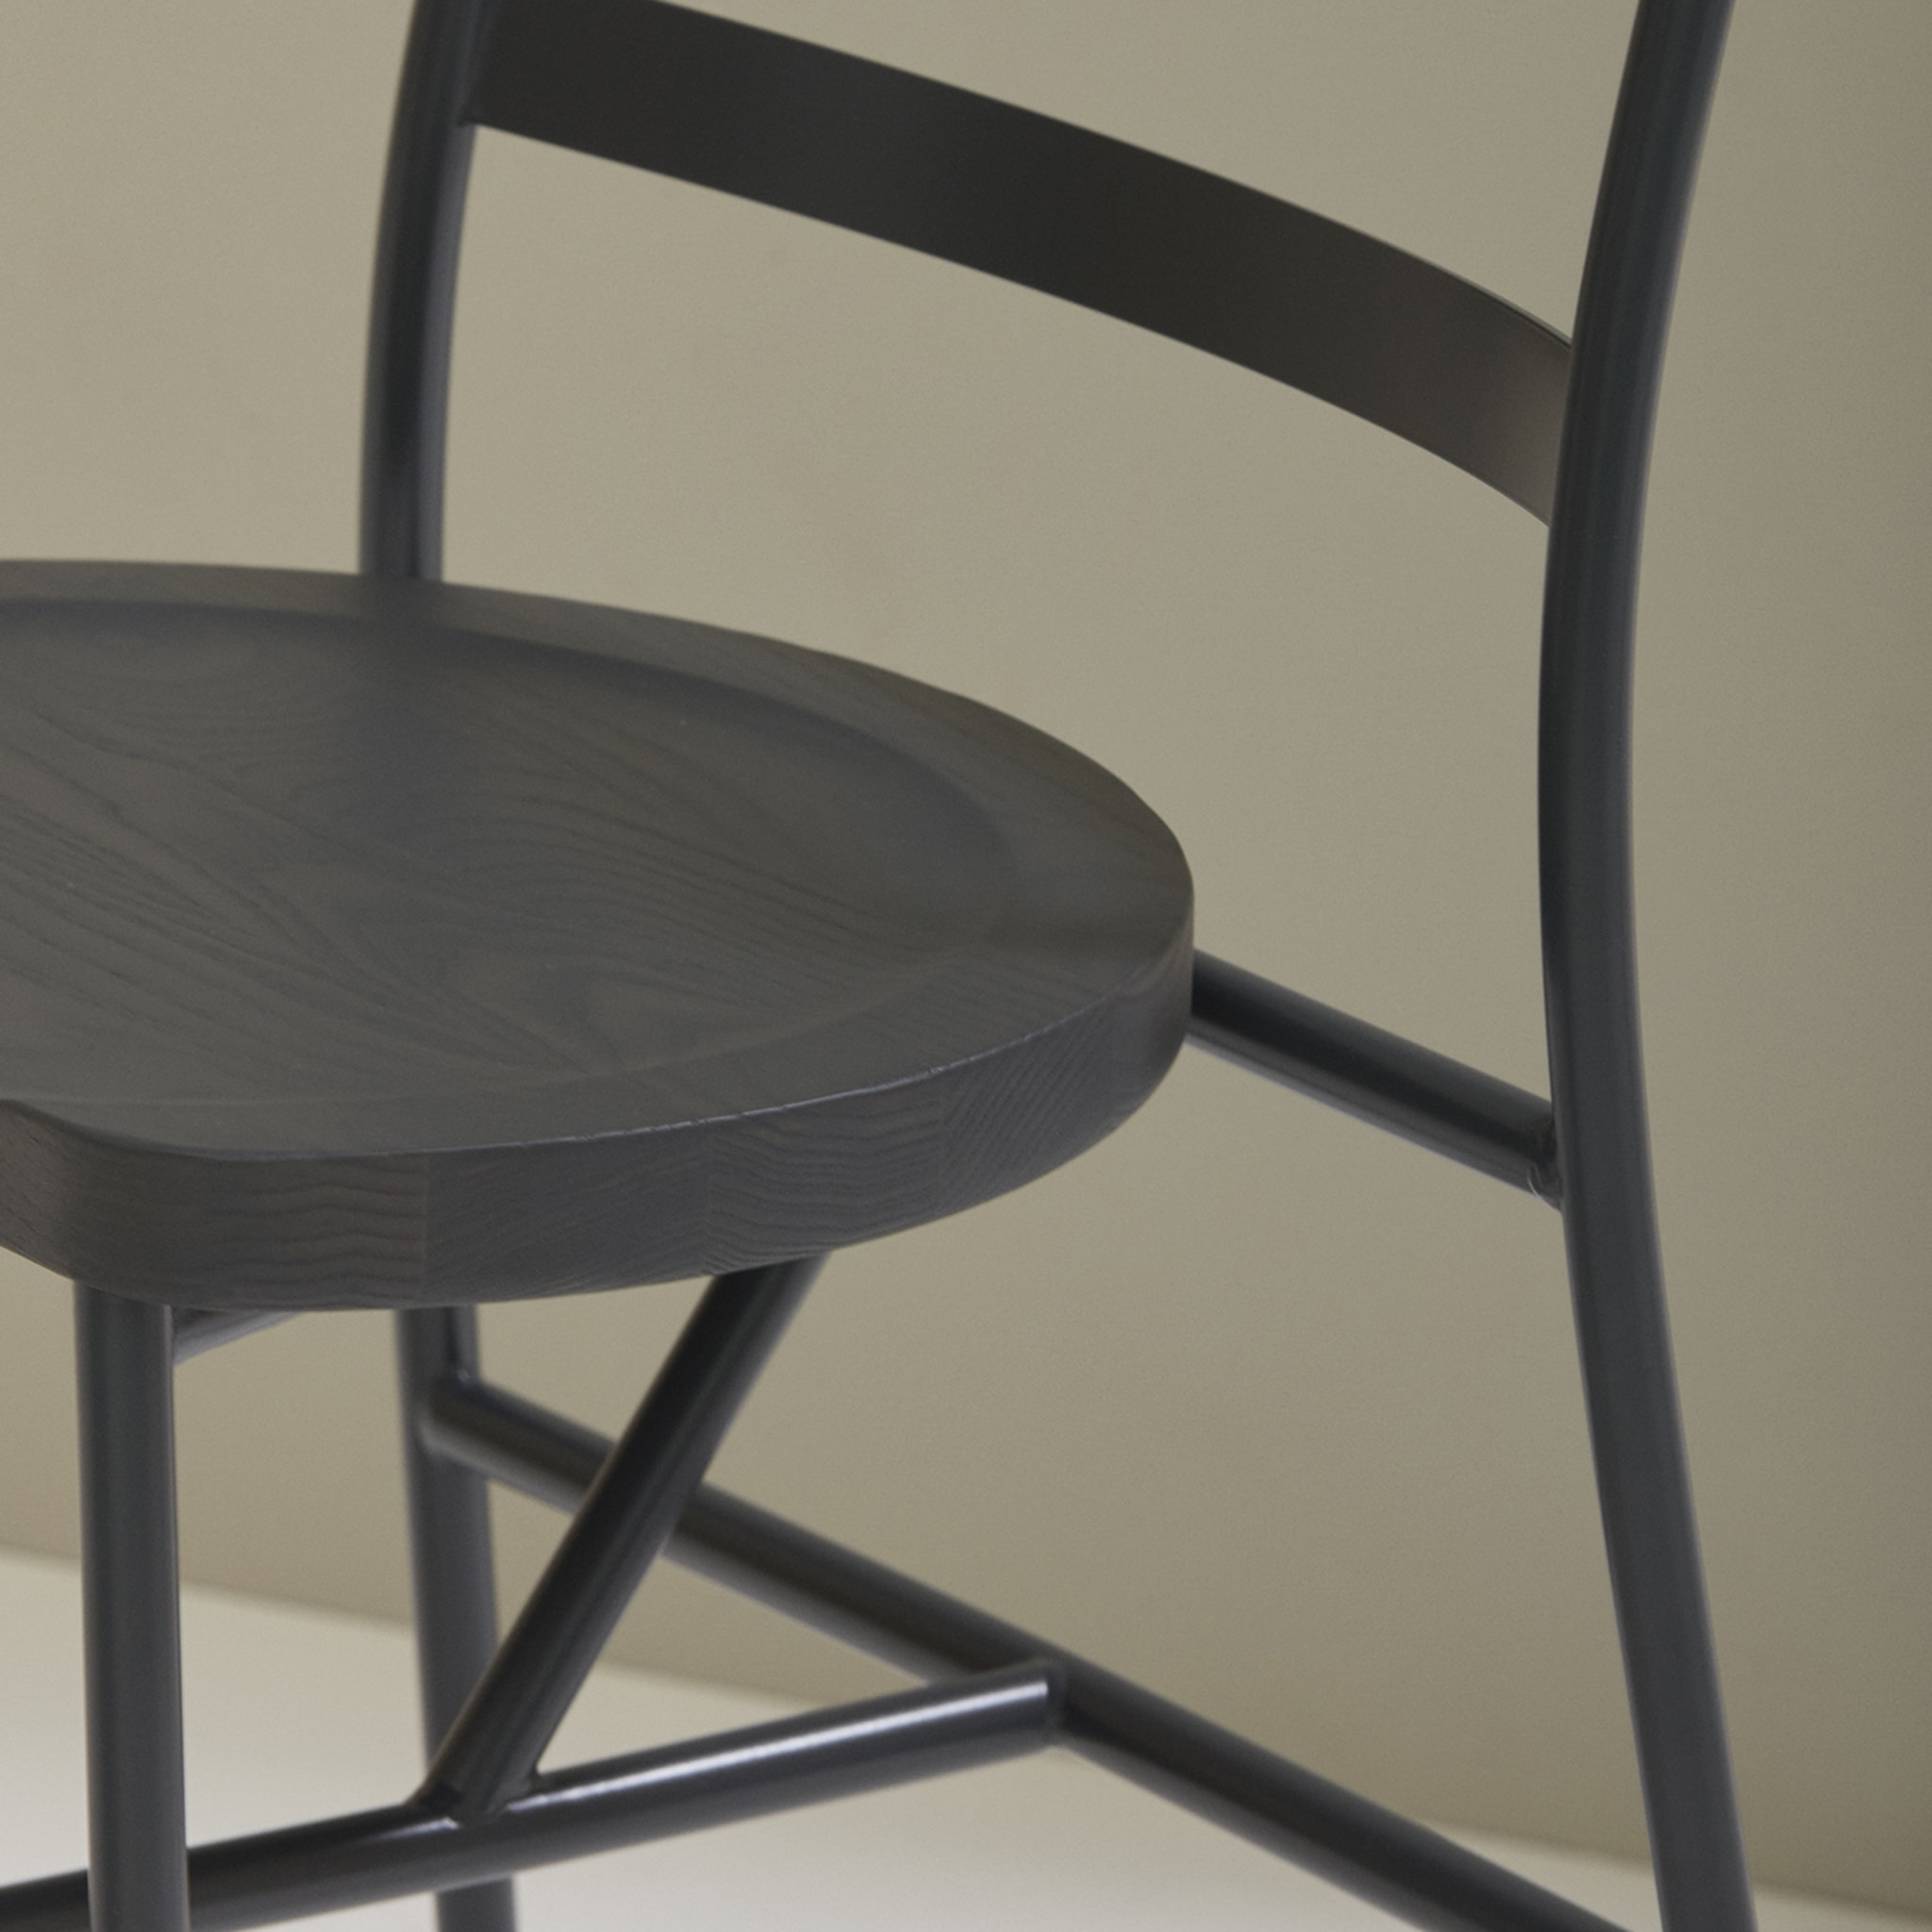 Puccio 726 Anthracite-Gray Chair by Emilio Nanni - Alternative view 1